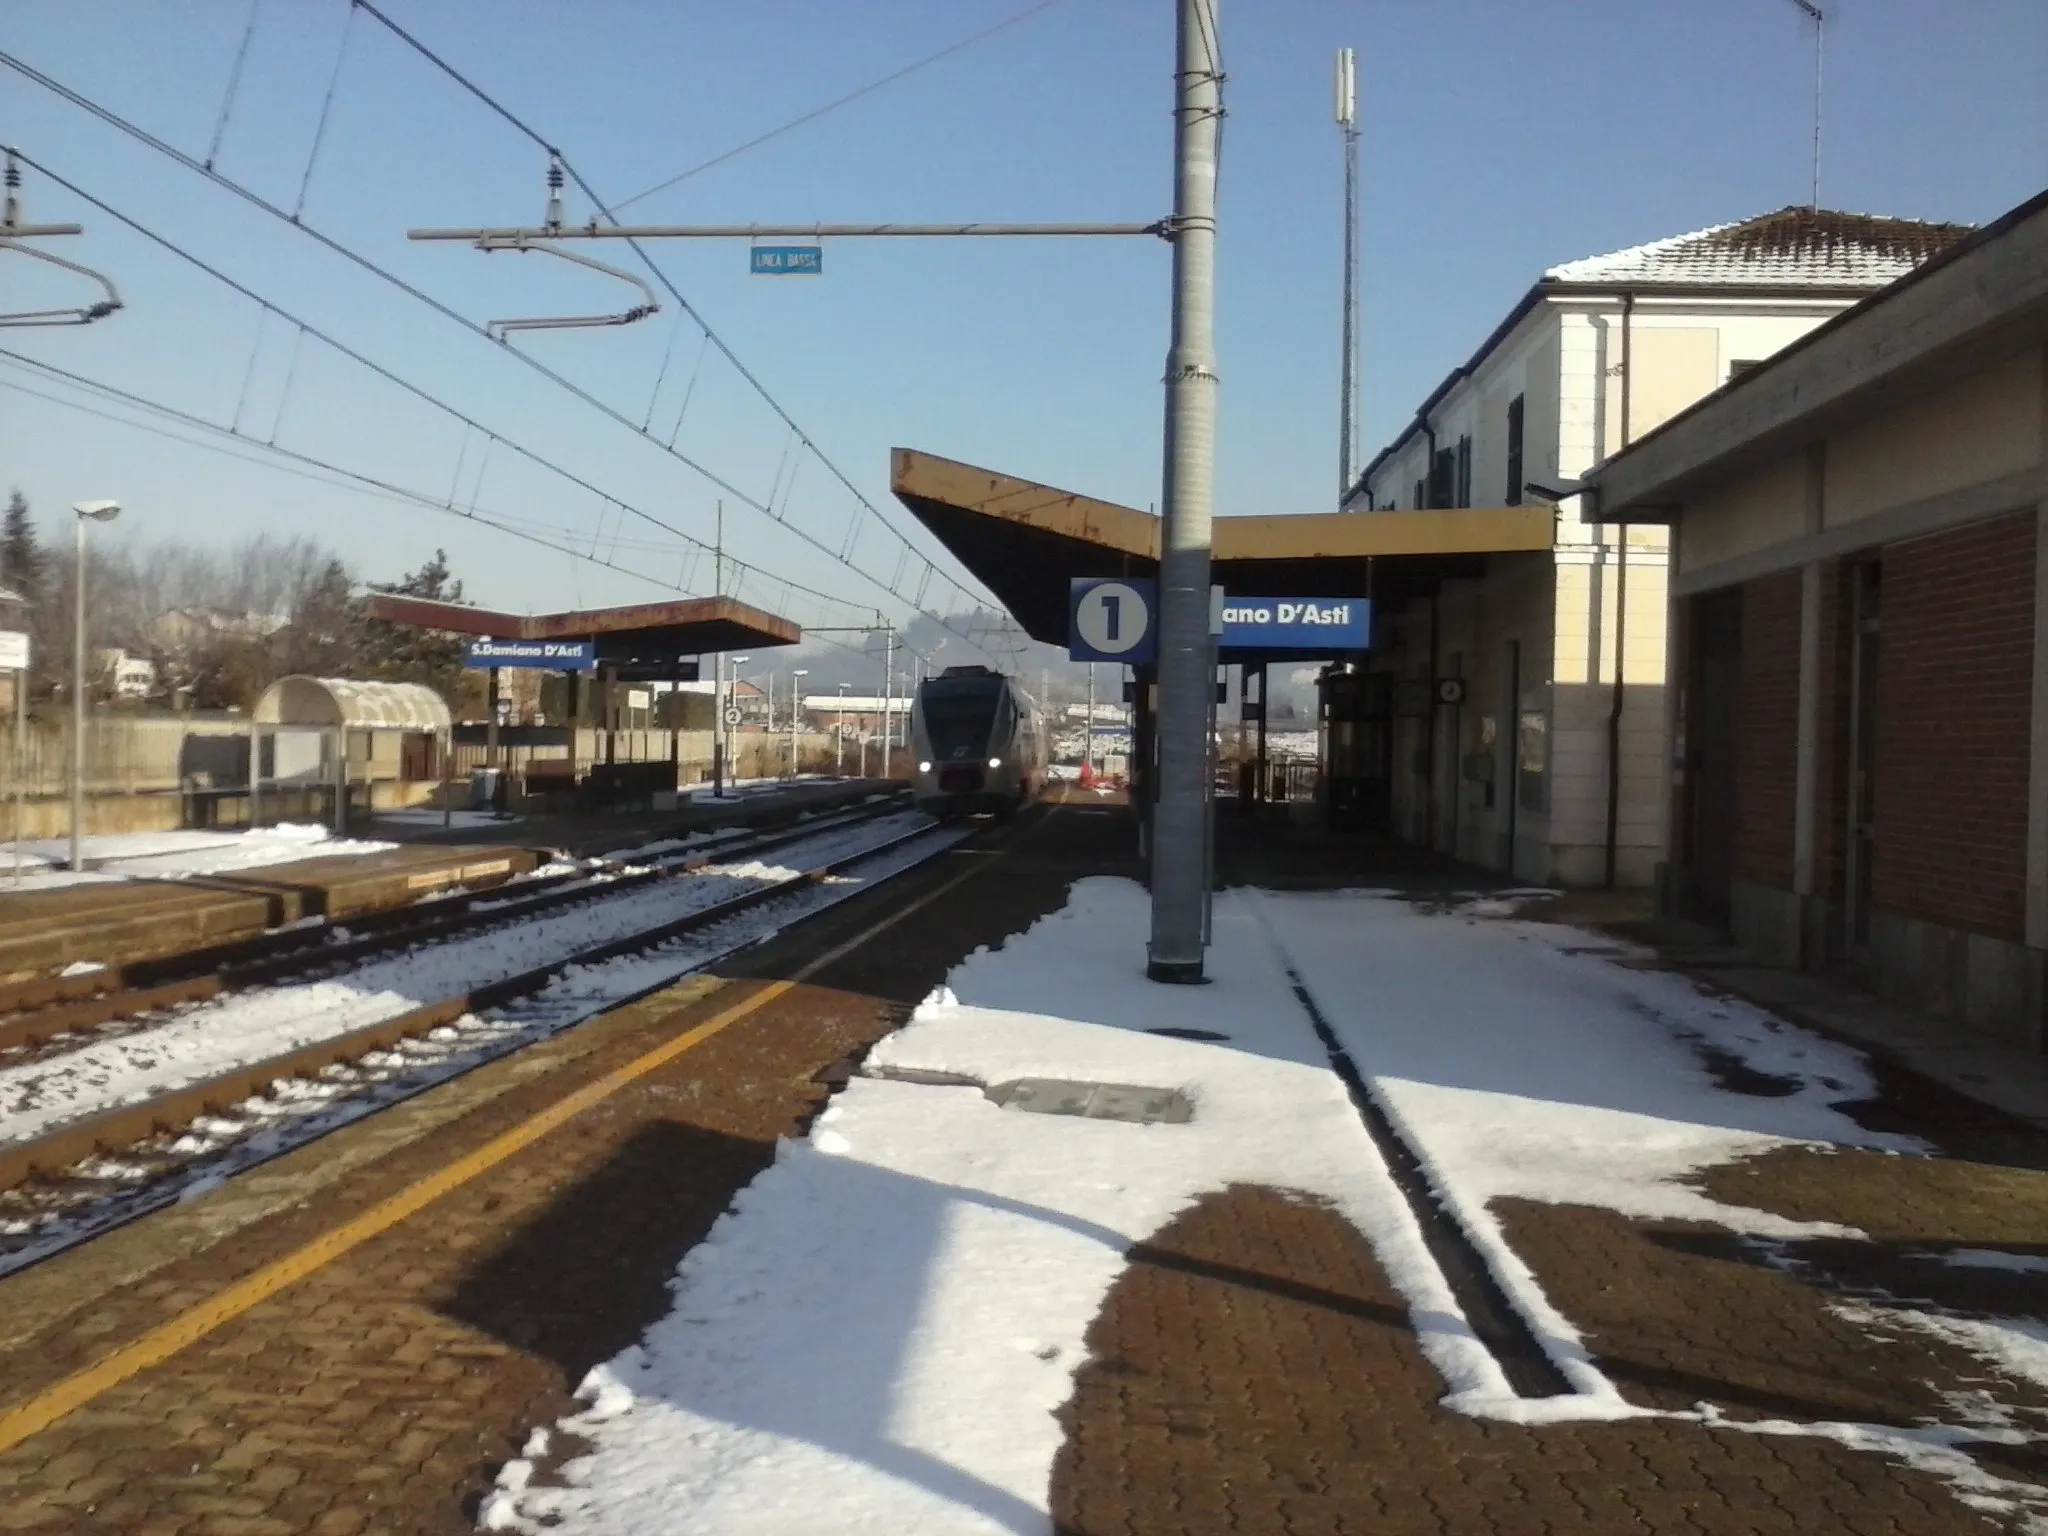 Photo showing: Treno Minuetto in arrivo nella stazione di San Damiano d'Asti (AT), Italia.